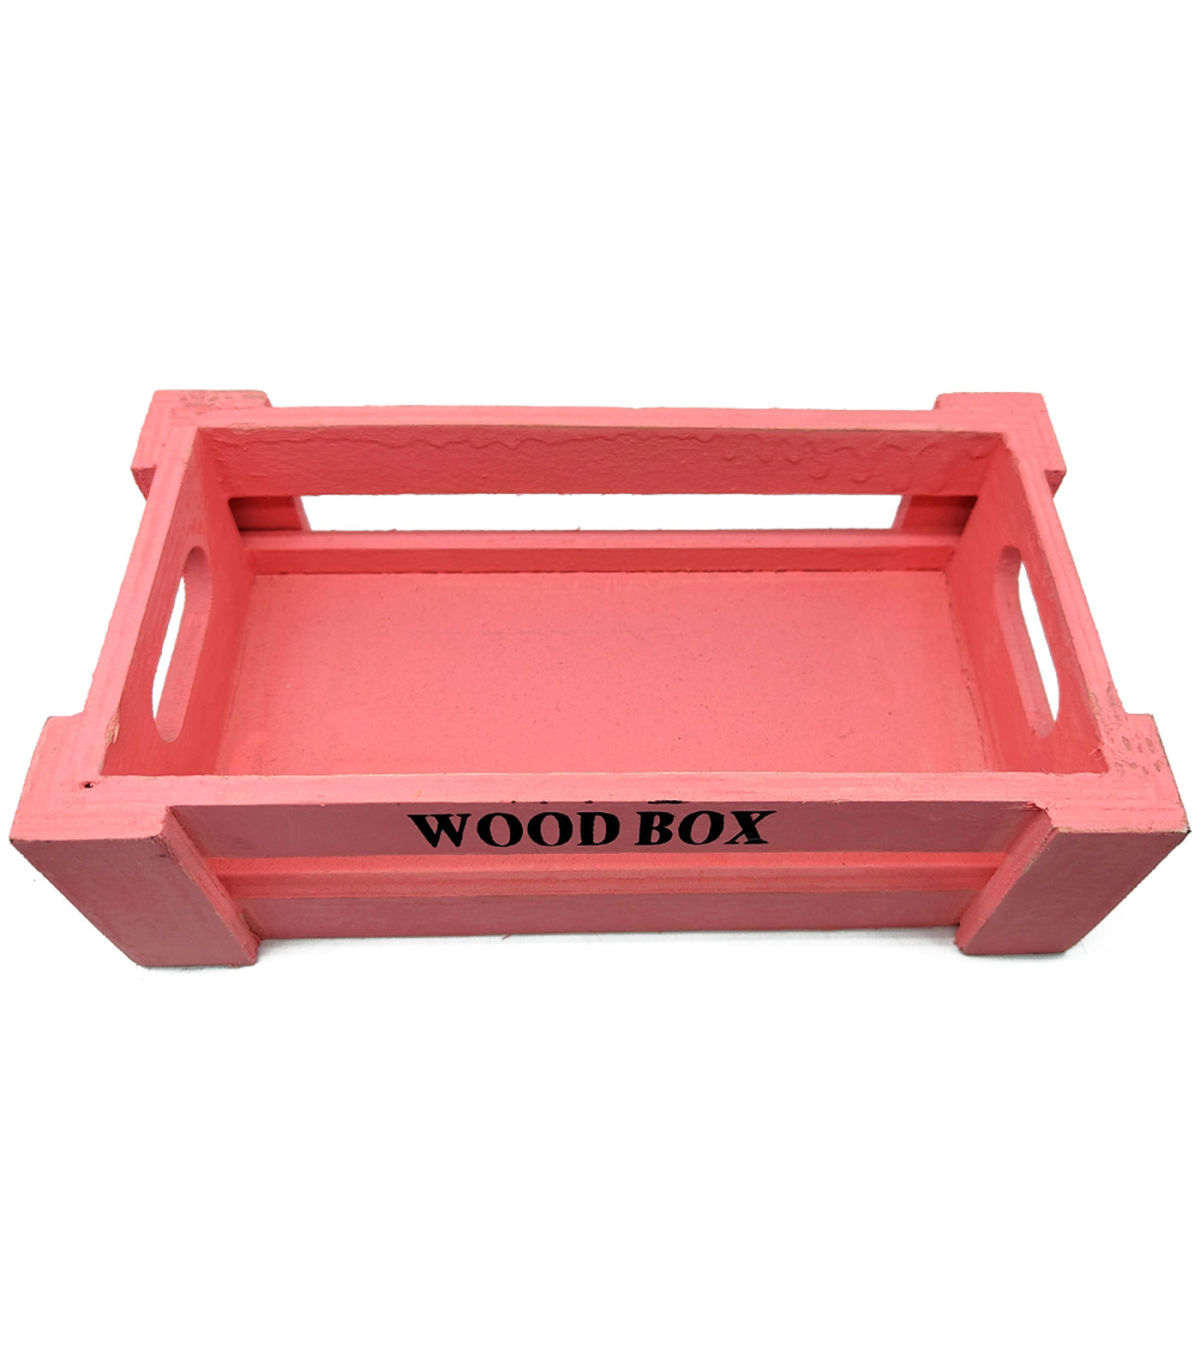 Tradineur - Caja de madera con 12 compartimentos y tapa con